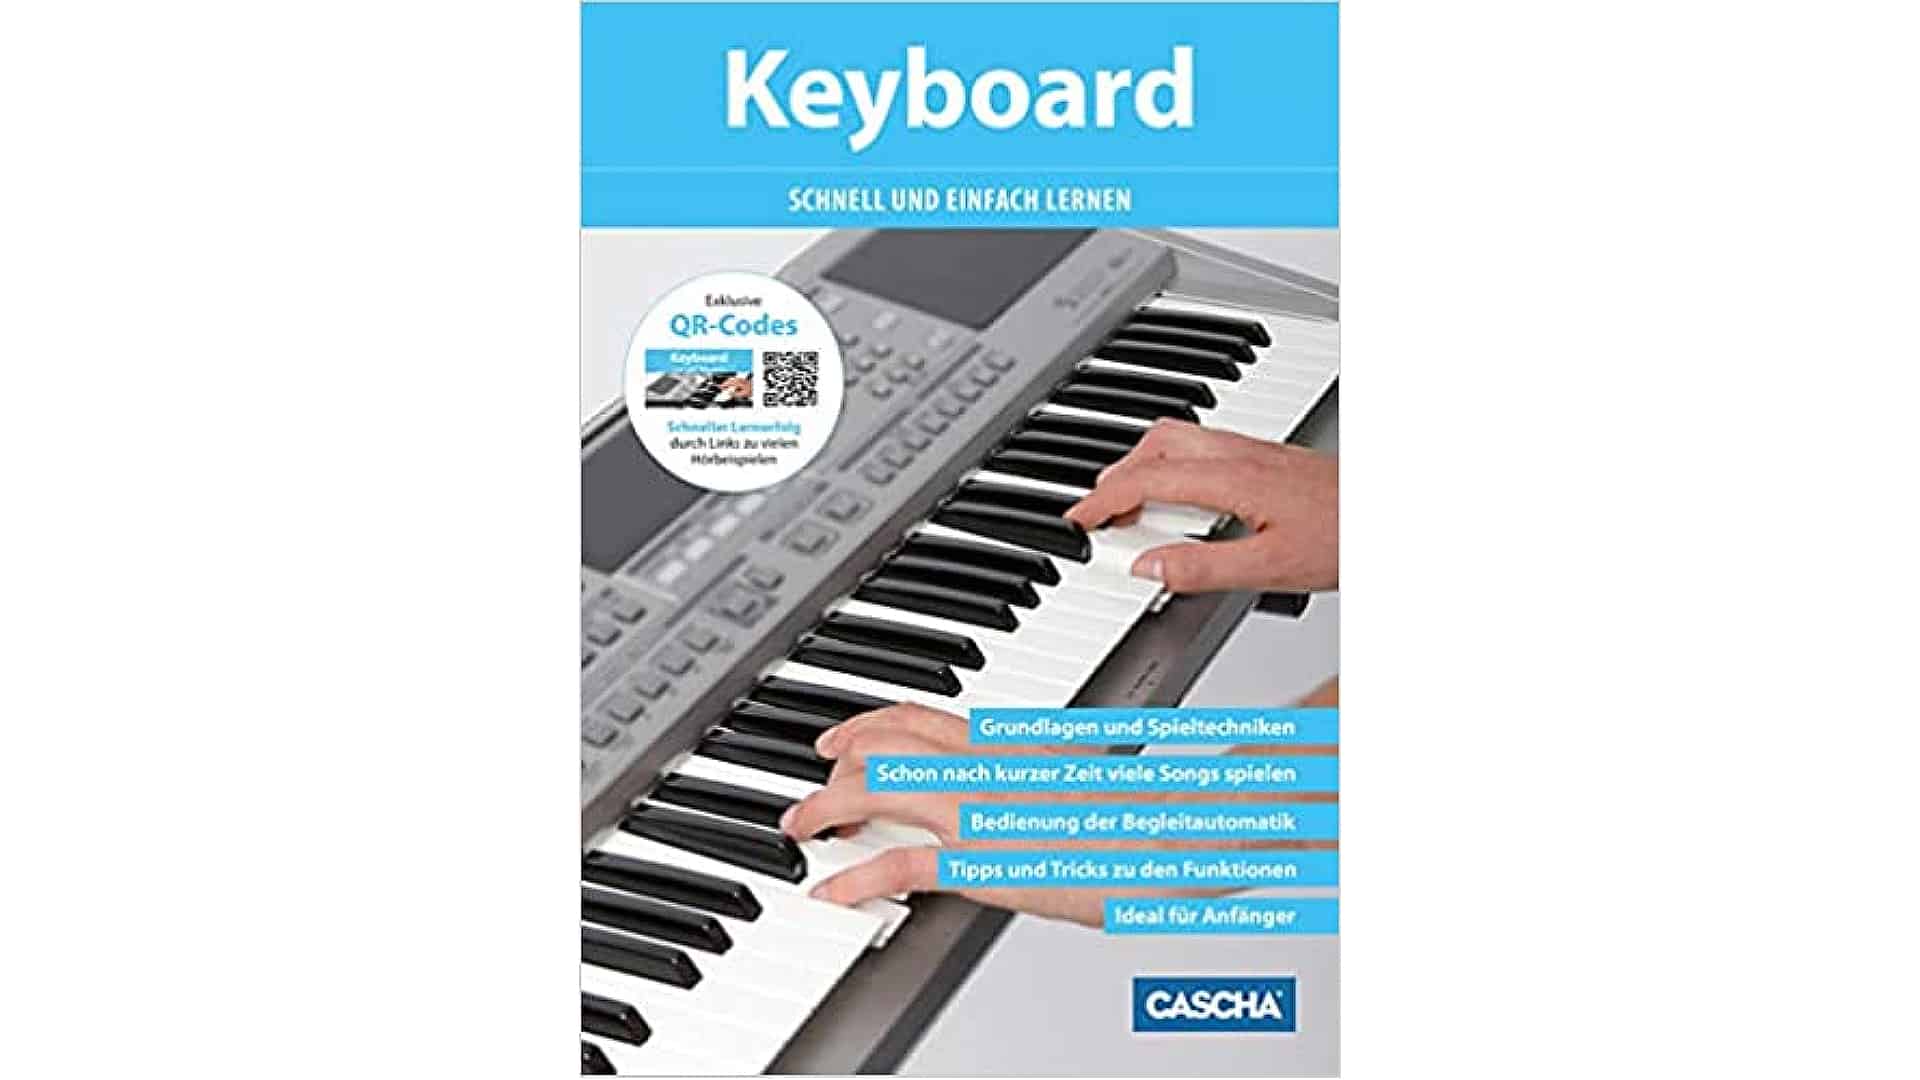 Welche Punkte es vorm Kauf die Keyboard spielen lernen für anfänger zu beachten gilt!